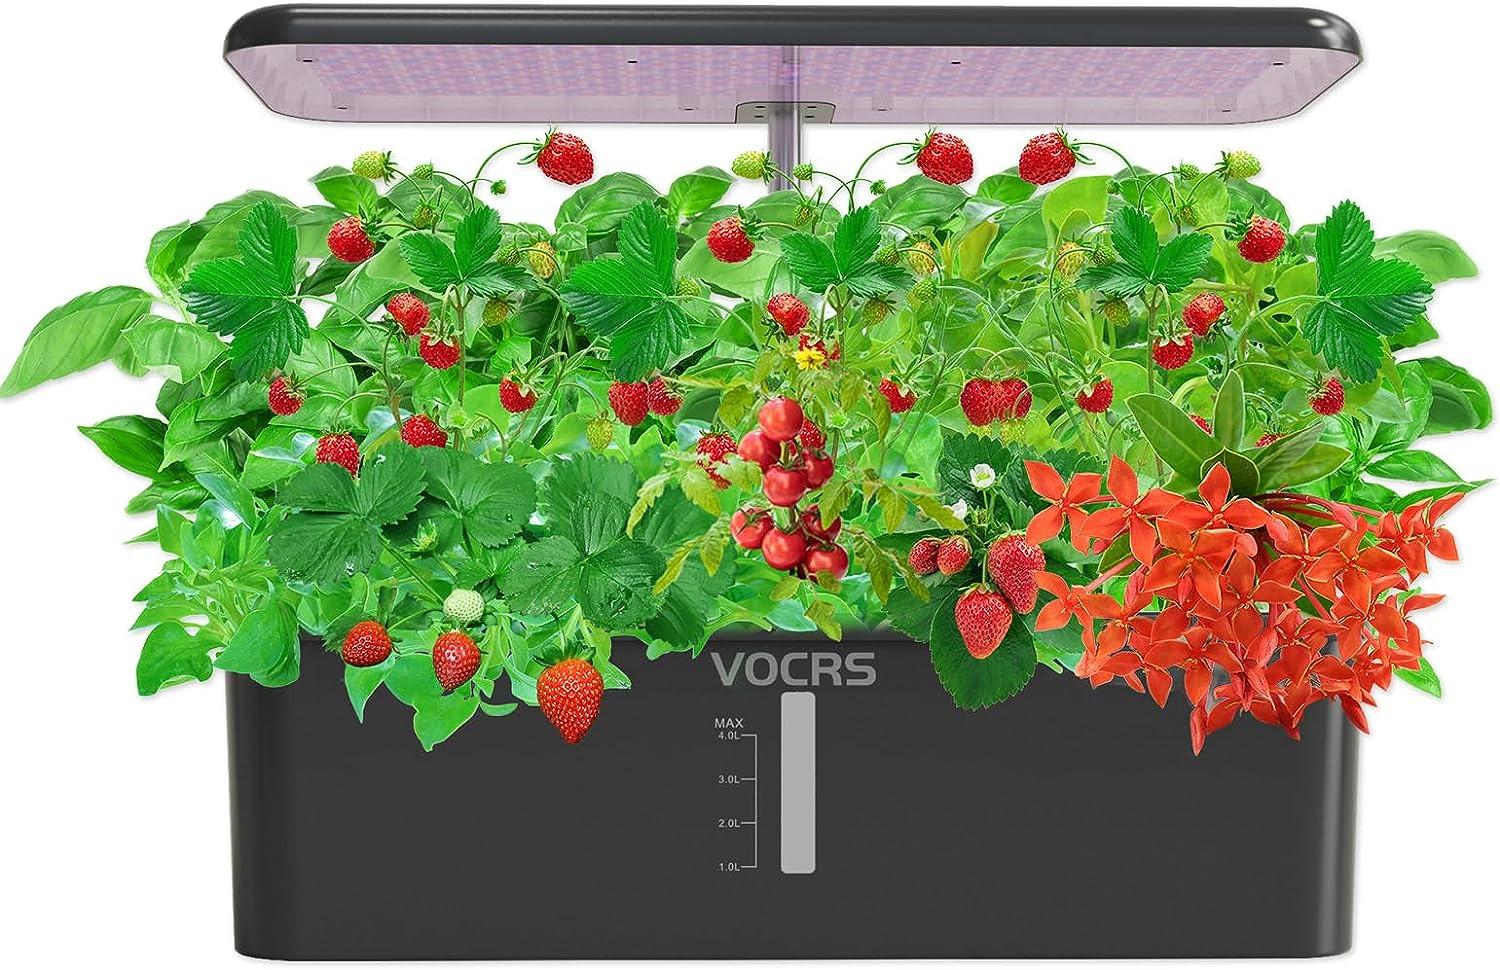 Hydroponics Growing System Indoor Garden -  12 Pods Herb Garden Kit Indoor with 